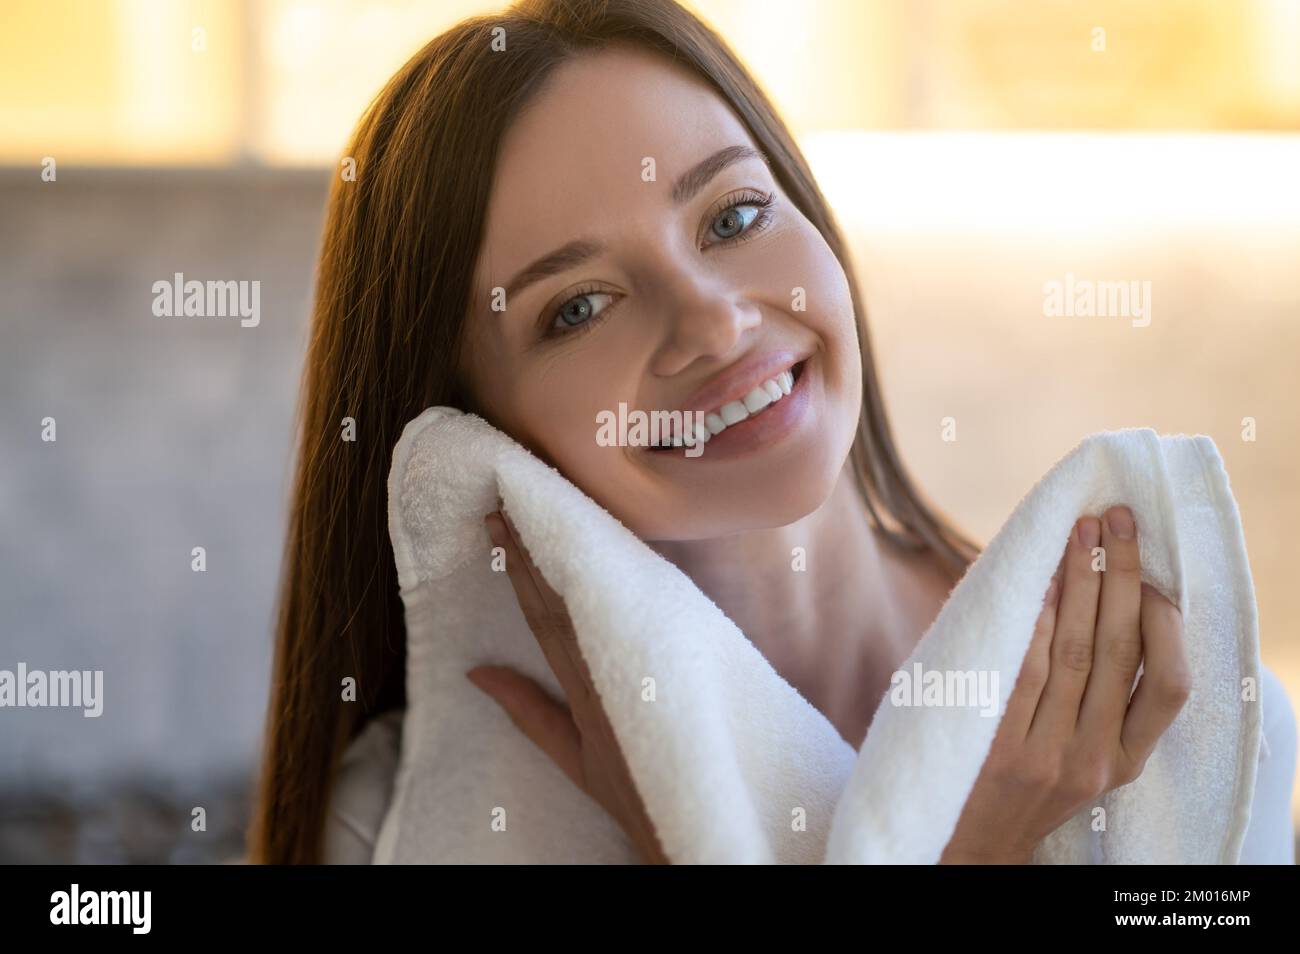 Ternura. Primer plano de la joven mujer bonita con una sonrisa tootea mirando la cámara tocando su cara con una toalla en el interior. Foto de stock